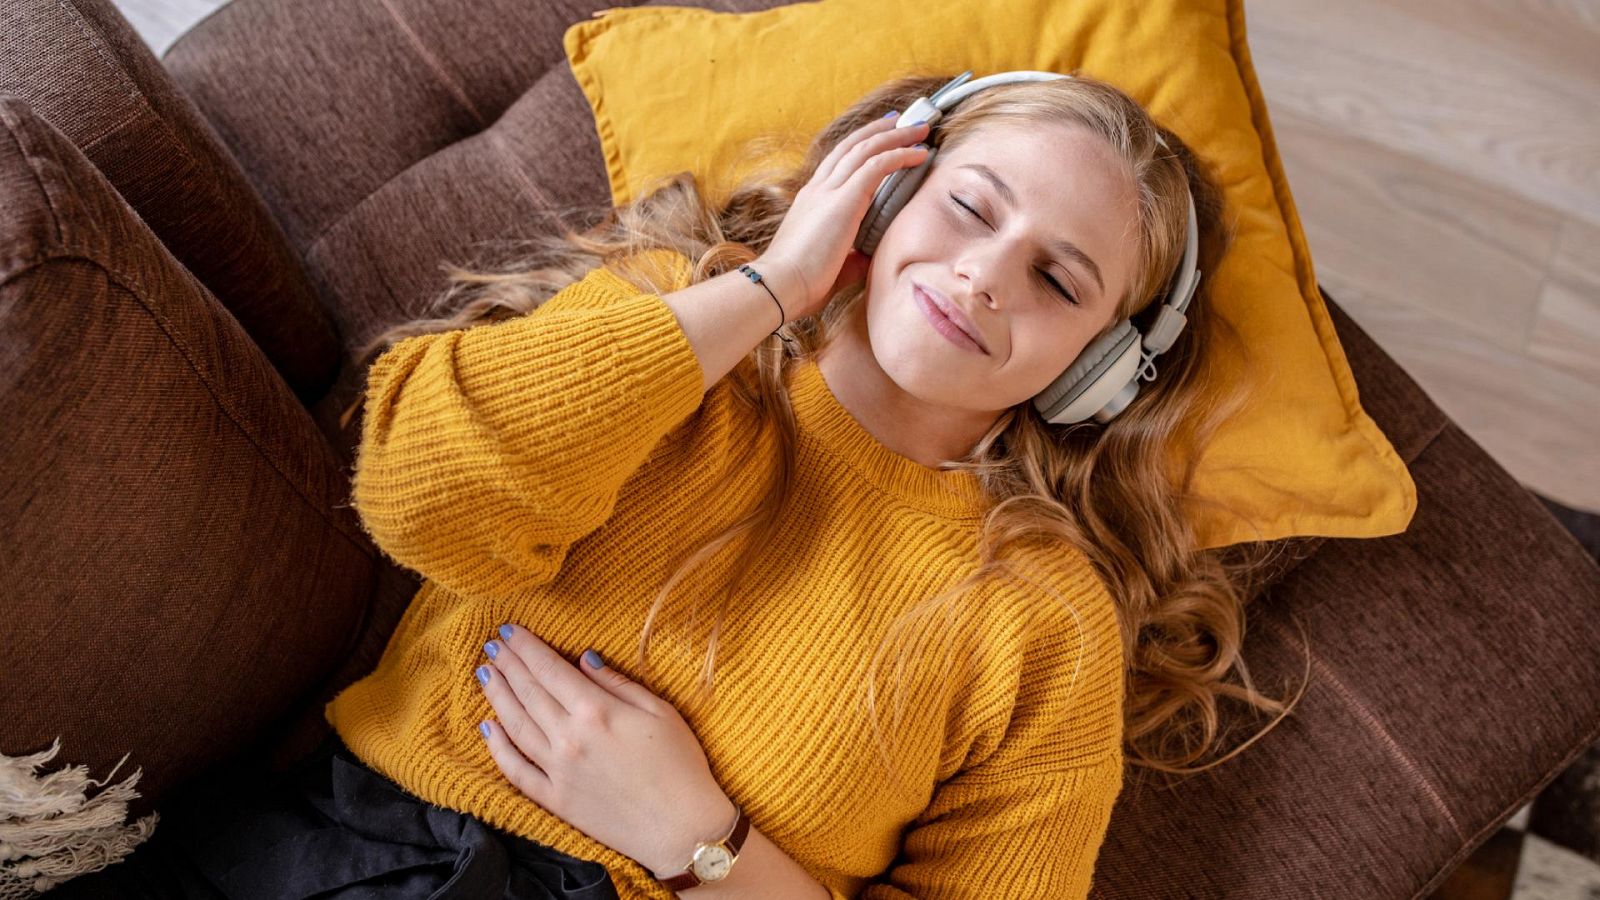 Escuchar música y ver series: las actividades preferidas de los jóvenes